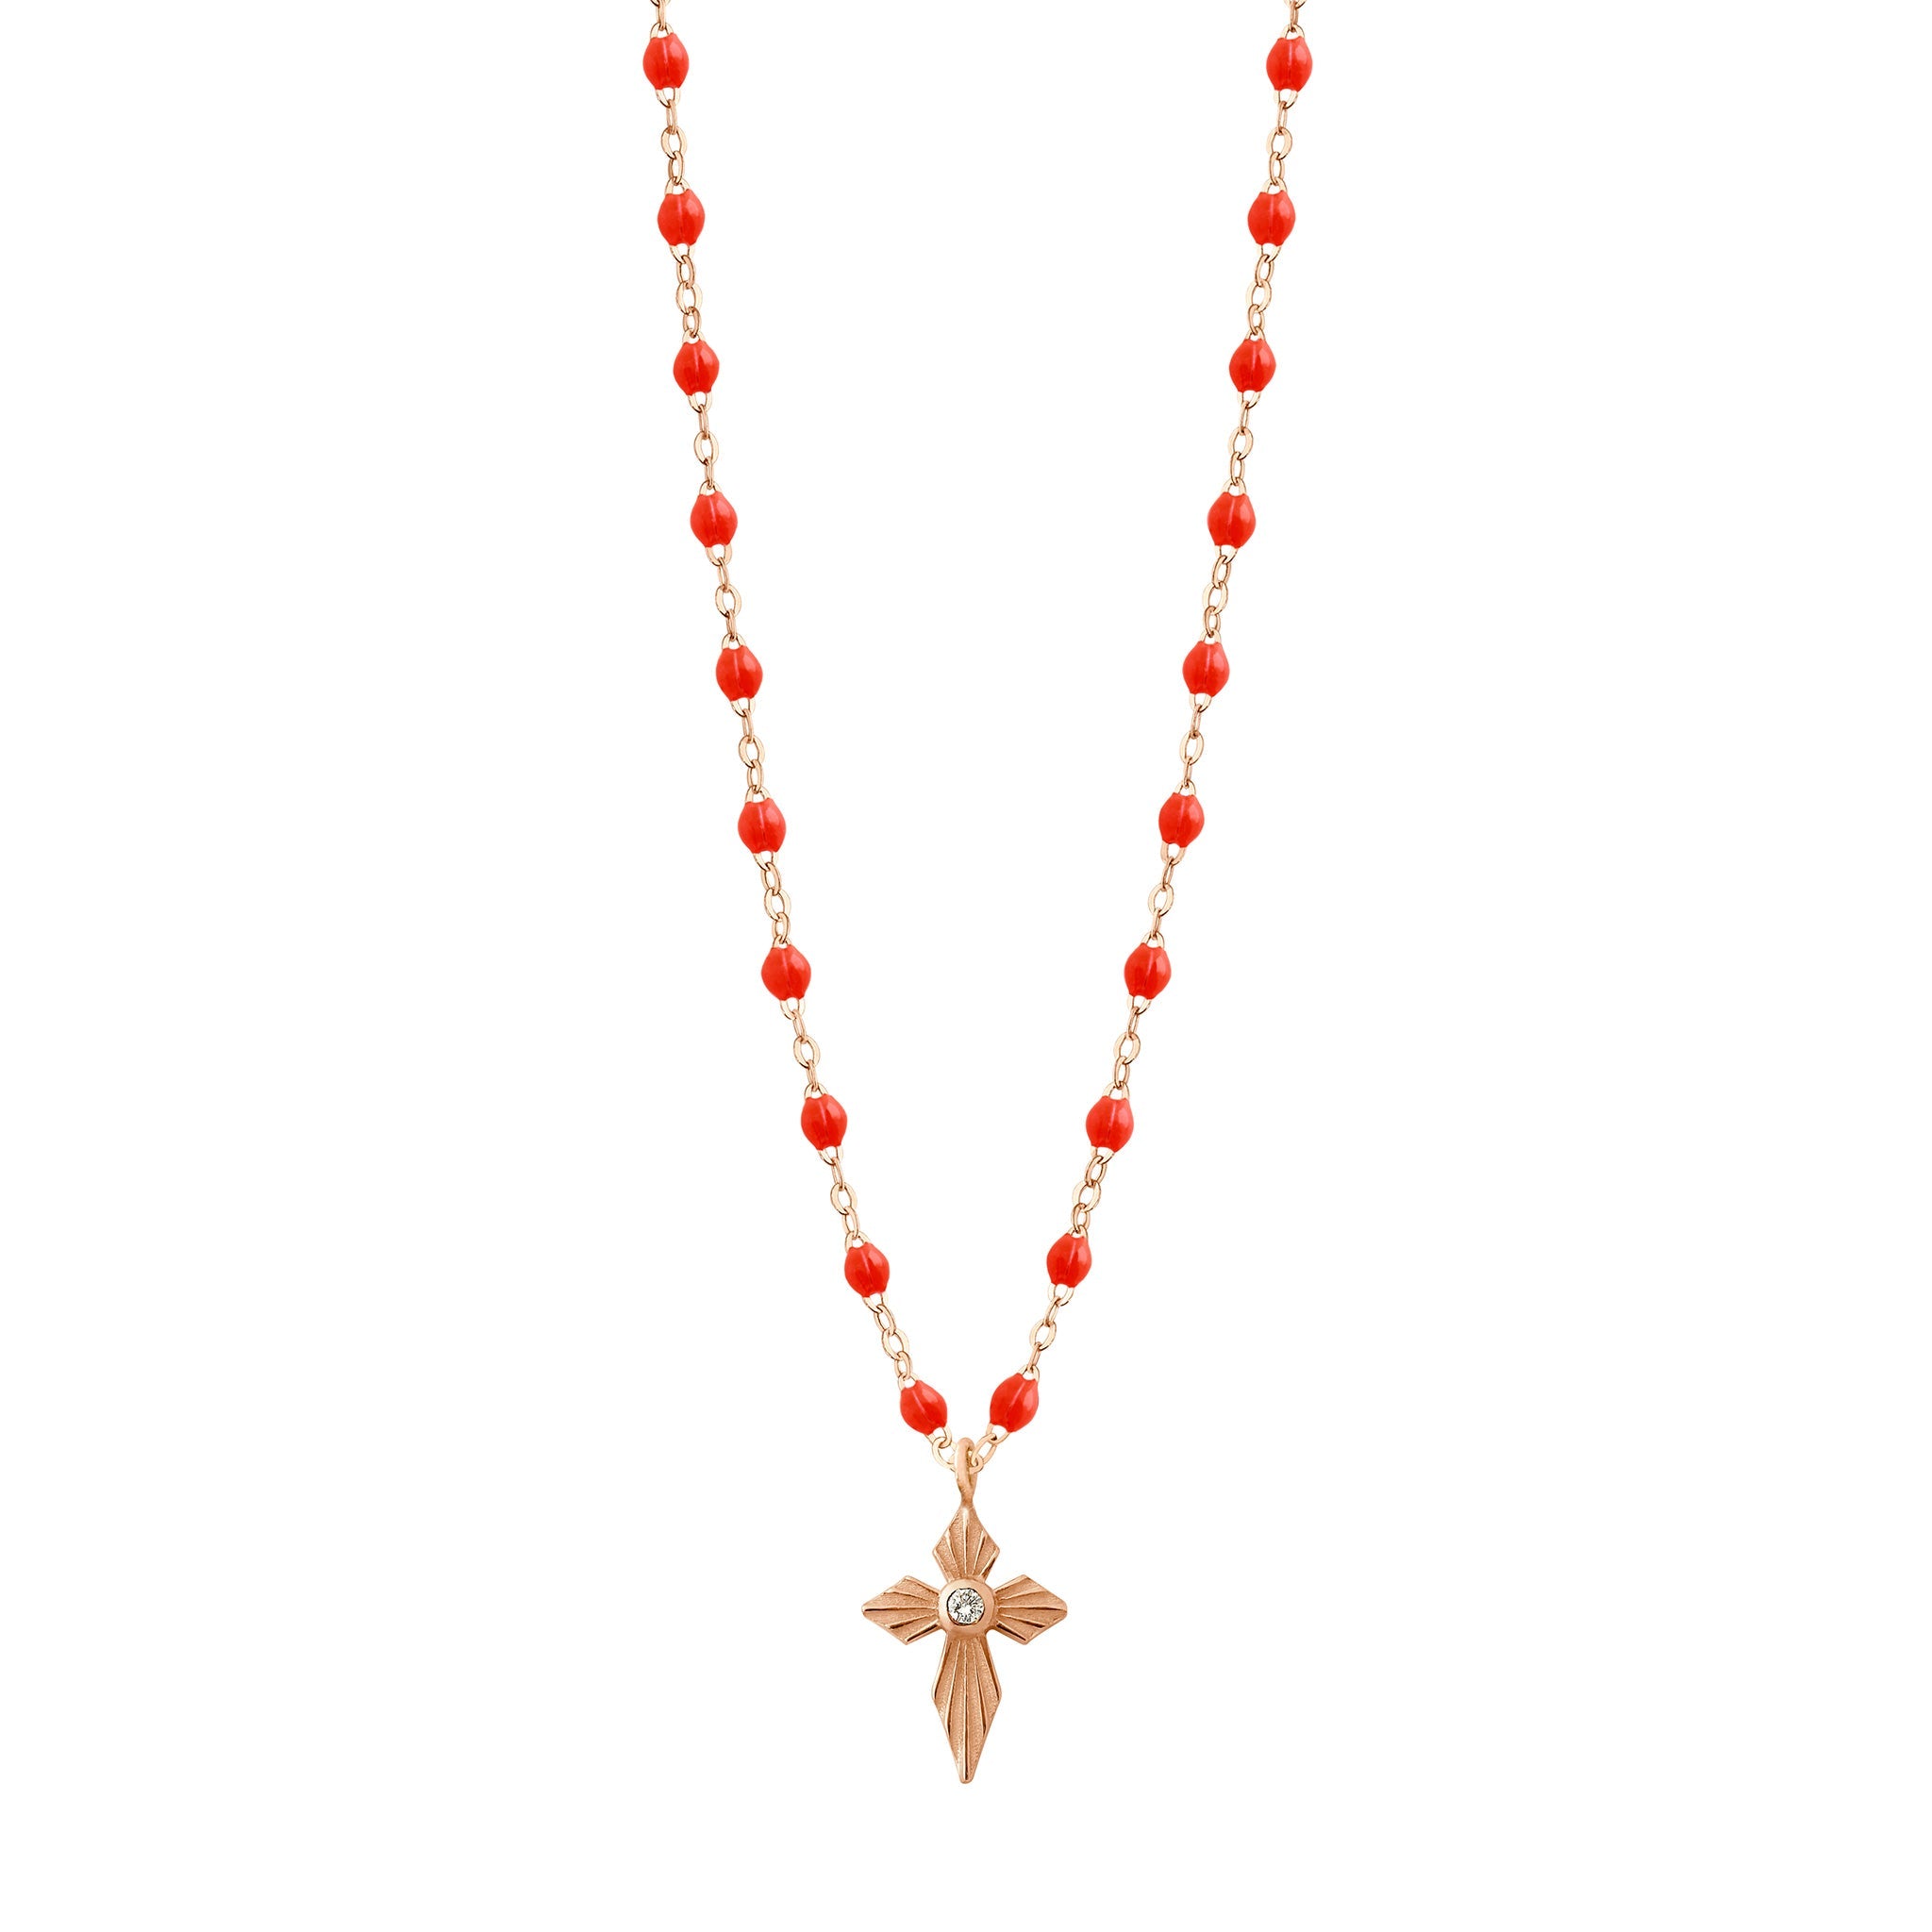 Gigi Clozeau - Croix Lumière Coral Diamond Necklace, Rose Gold, 16.5"